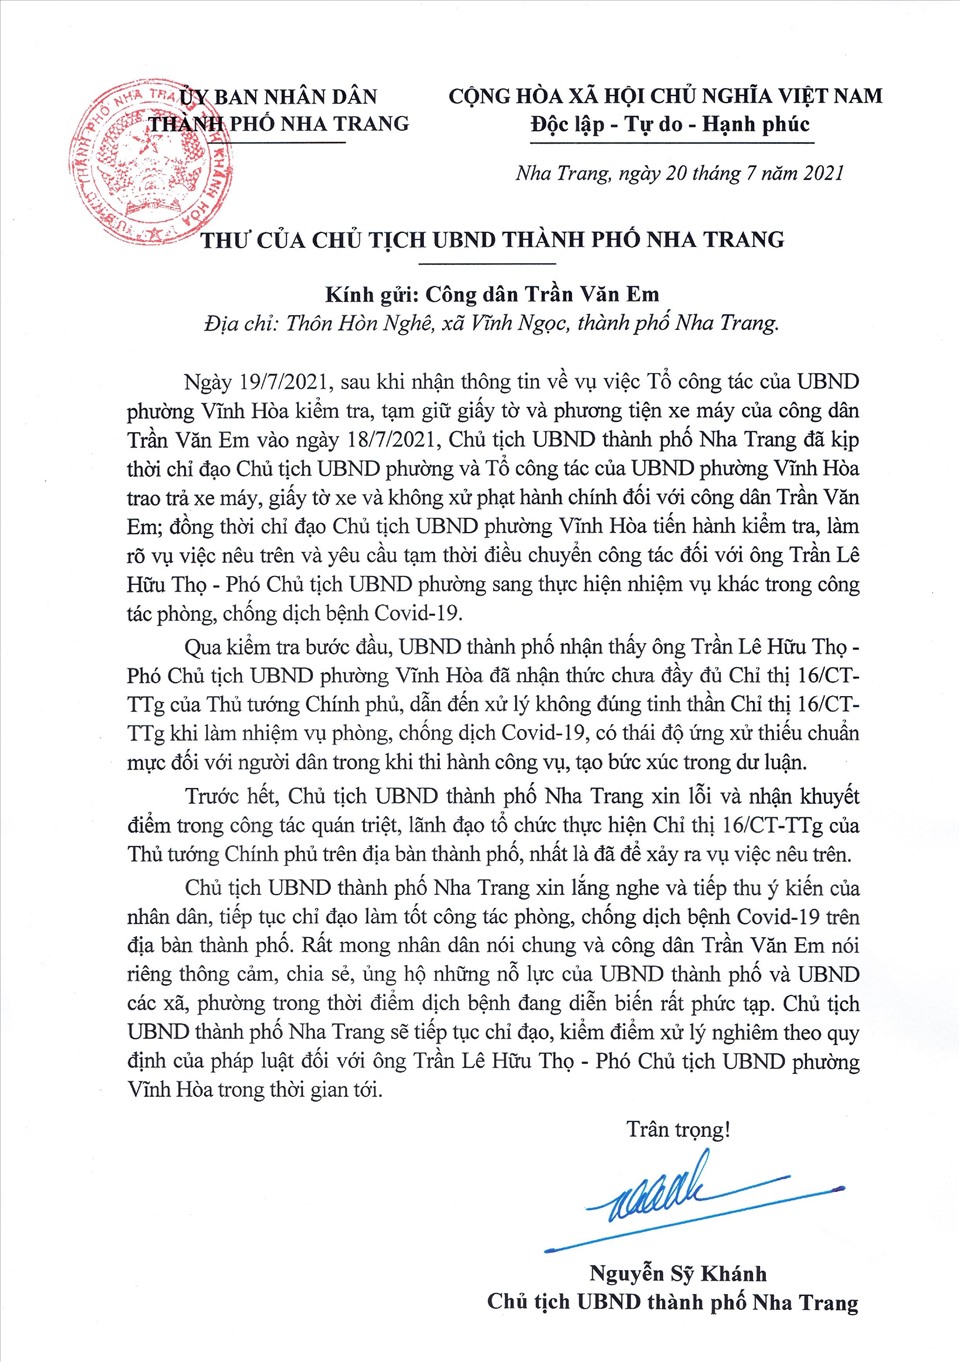 Thư xin lỗi của Chủ tịch UBND TP. Nha Trang gửi anh Trần Văn Em.